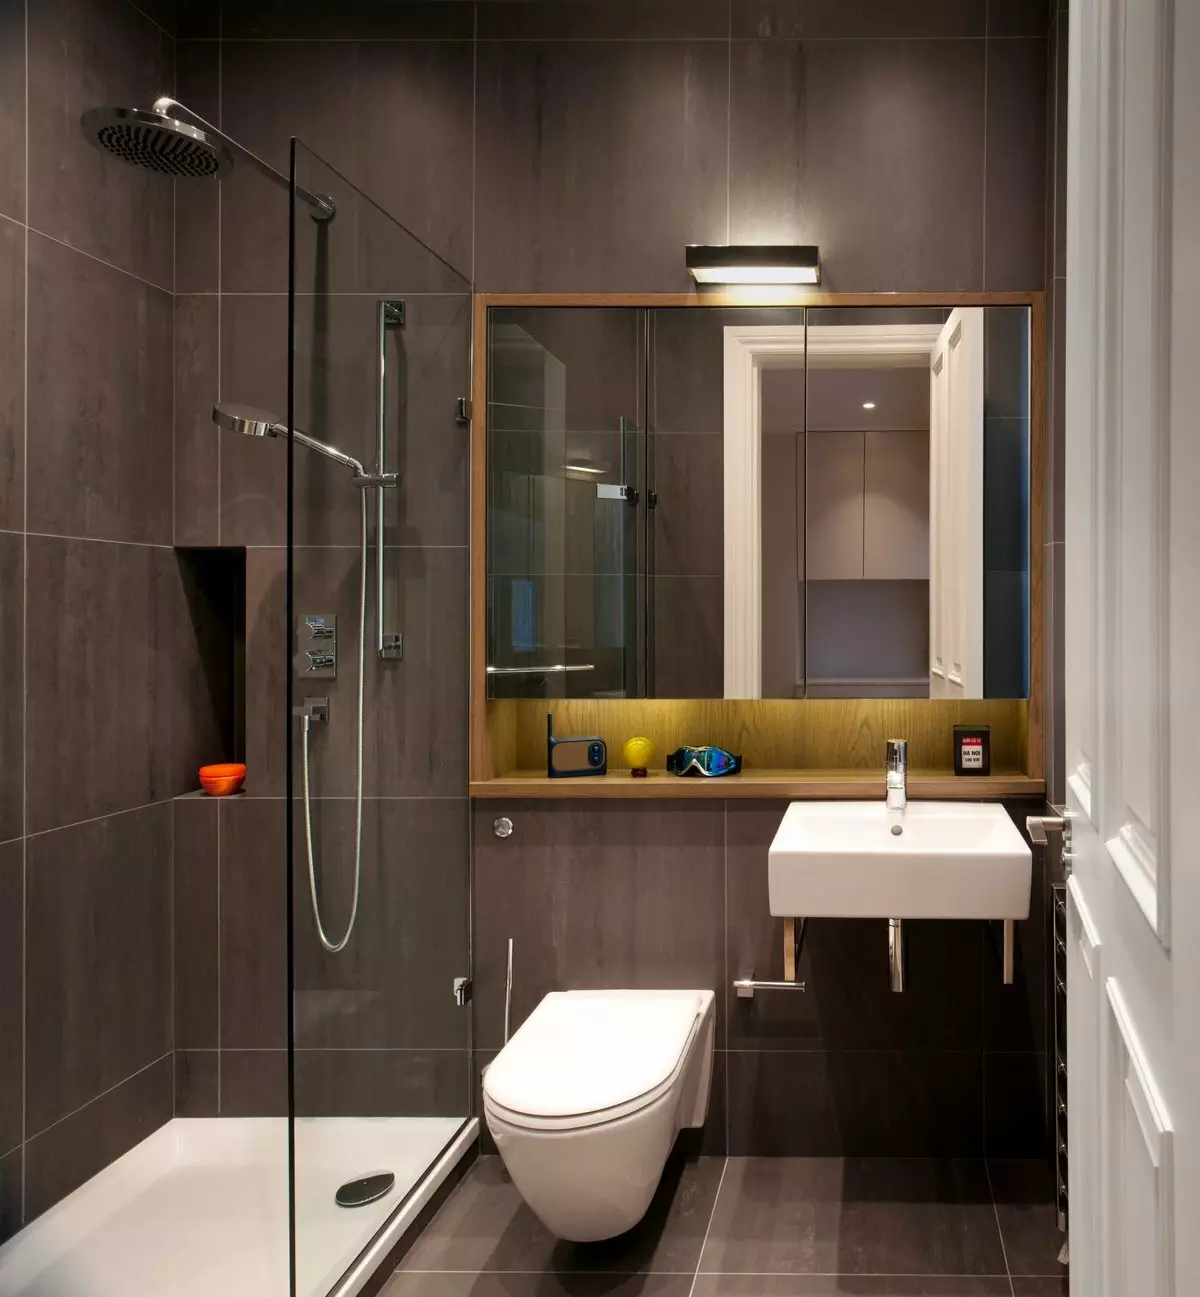 تصميم مجتمعة الحمام 6 متر مربع. M (77 صور): التصميم الداخلي مع مرحاض، حمام تخطيط 2 من 3 أمتار 10454_14